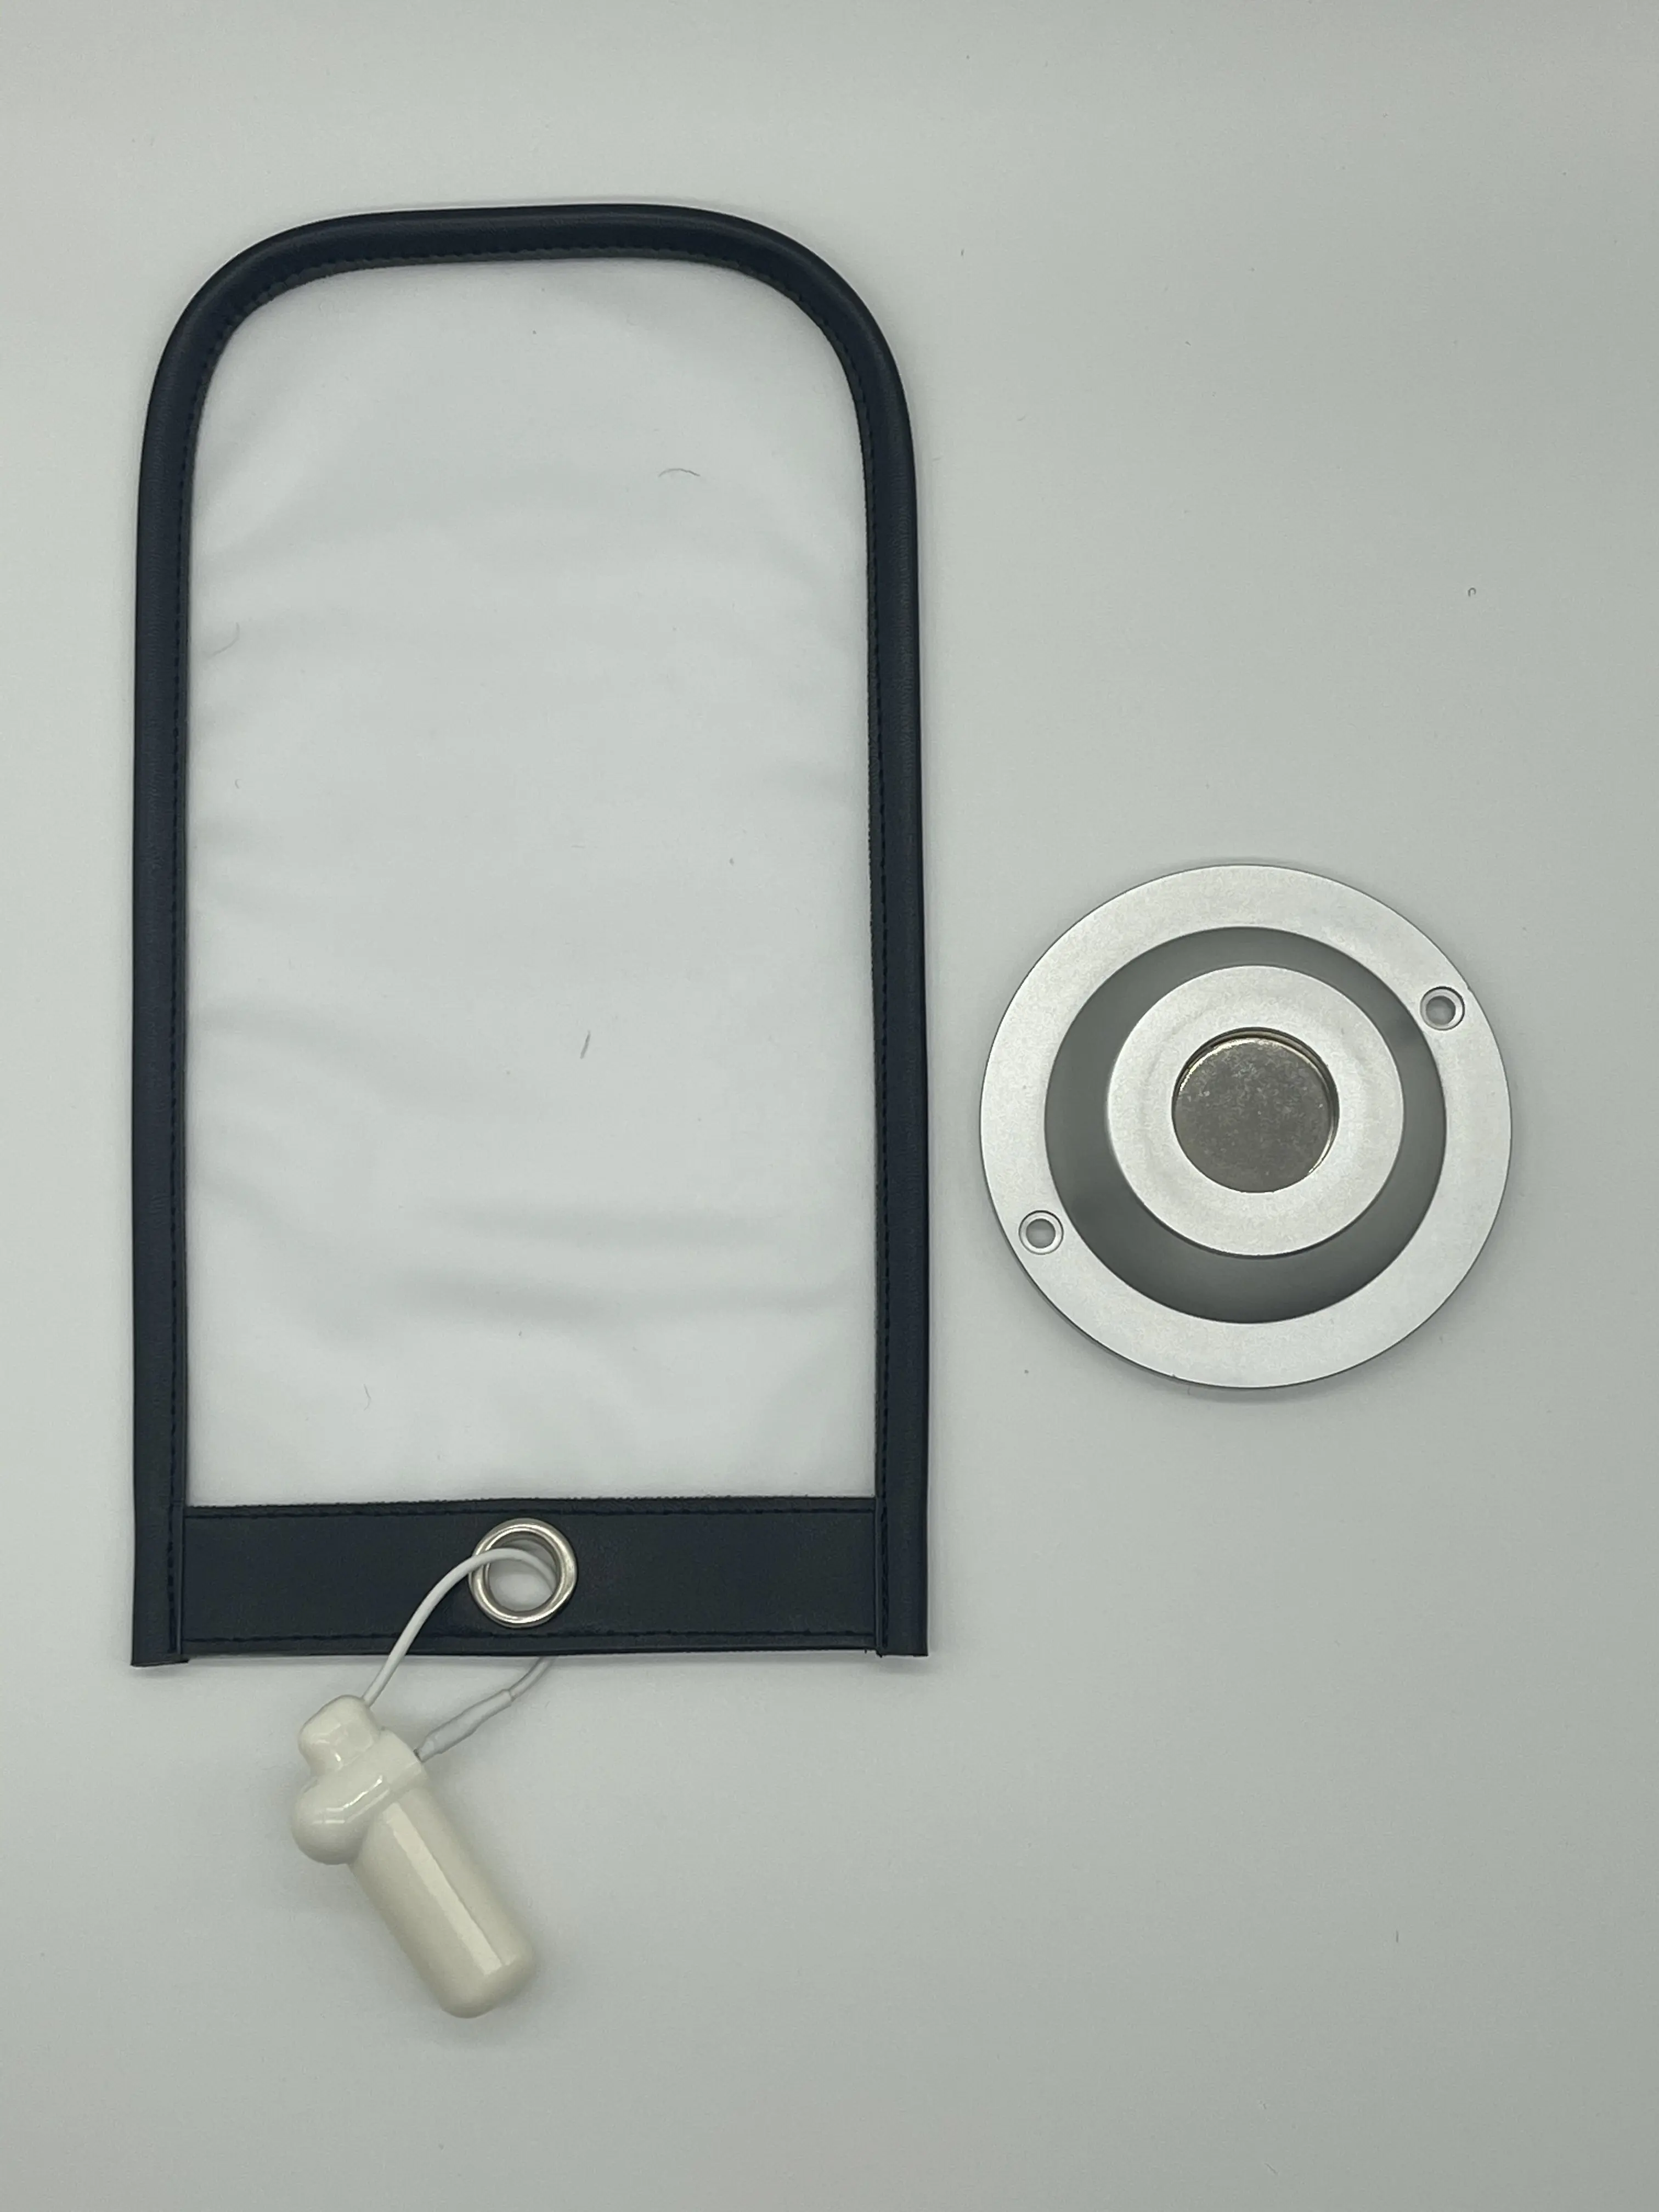 Матовый чехол для телефона, многоразовый защитный чехол из искусственной кожи с защитой от фото и прошивкой спереди